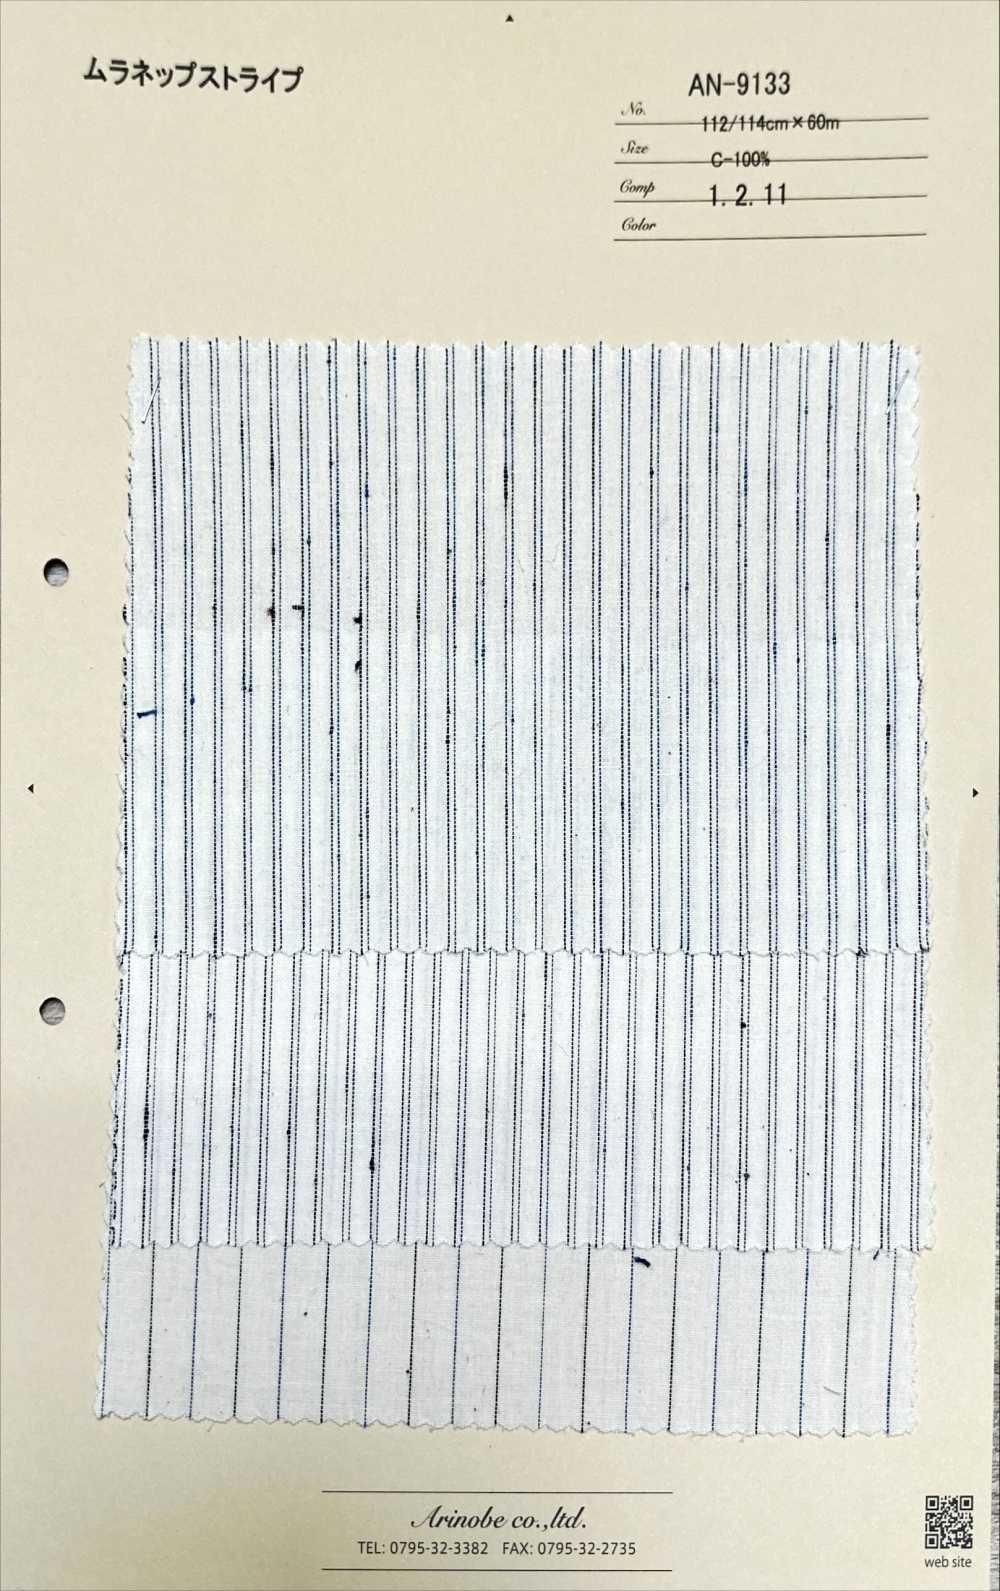 AN-9133 Kẻ Sọc Muranep[Vải] ARINOBE CO., LTD.